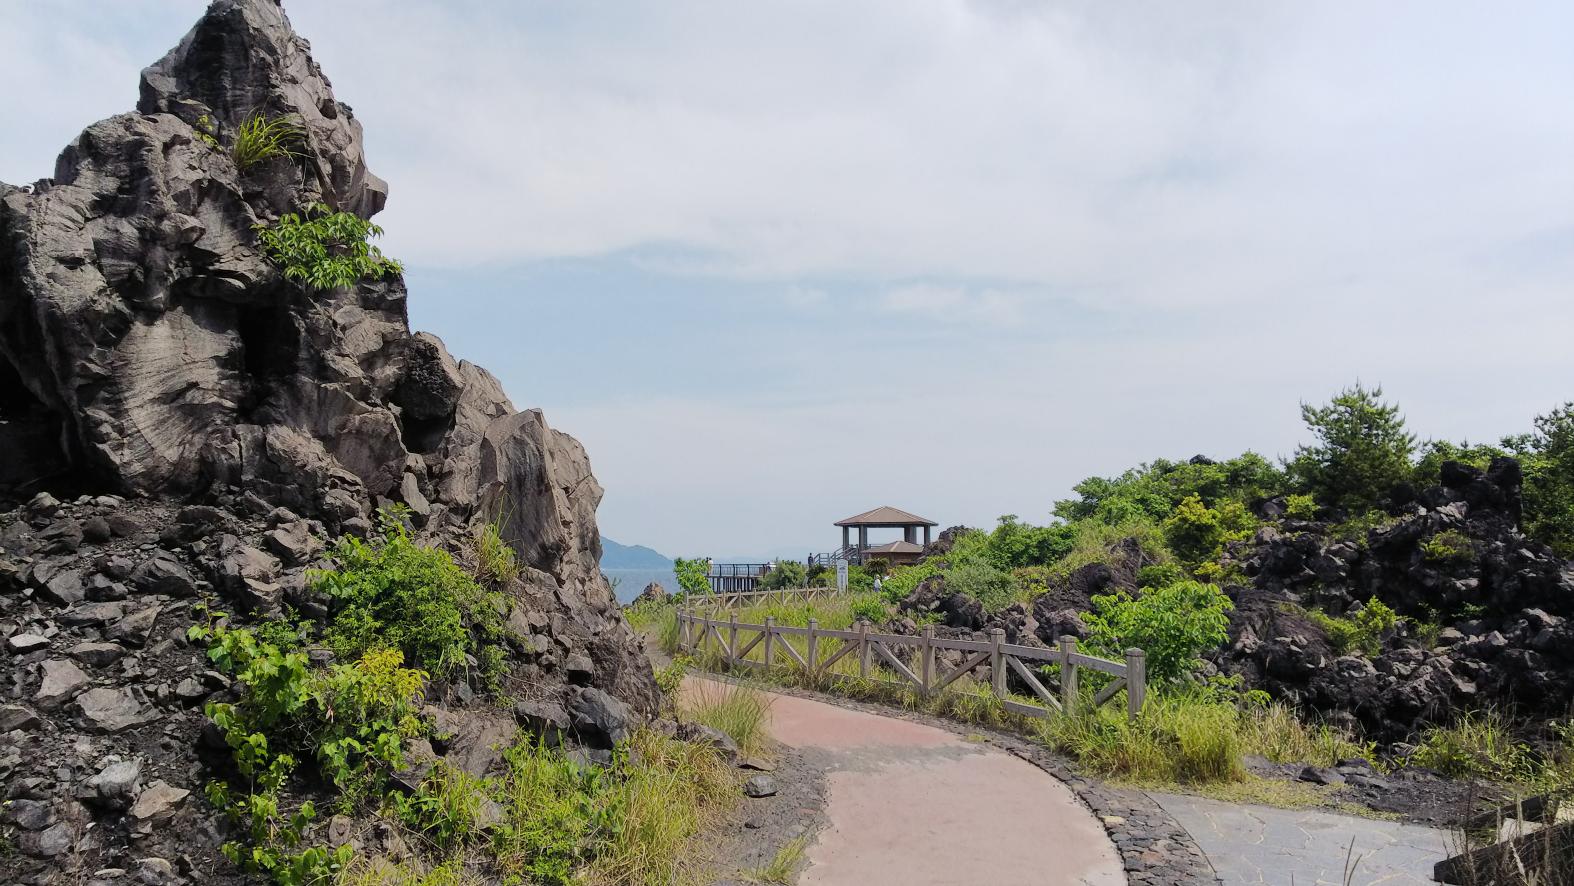 「桜島」溶岩なぎさ公園足湯-8